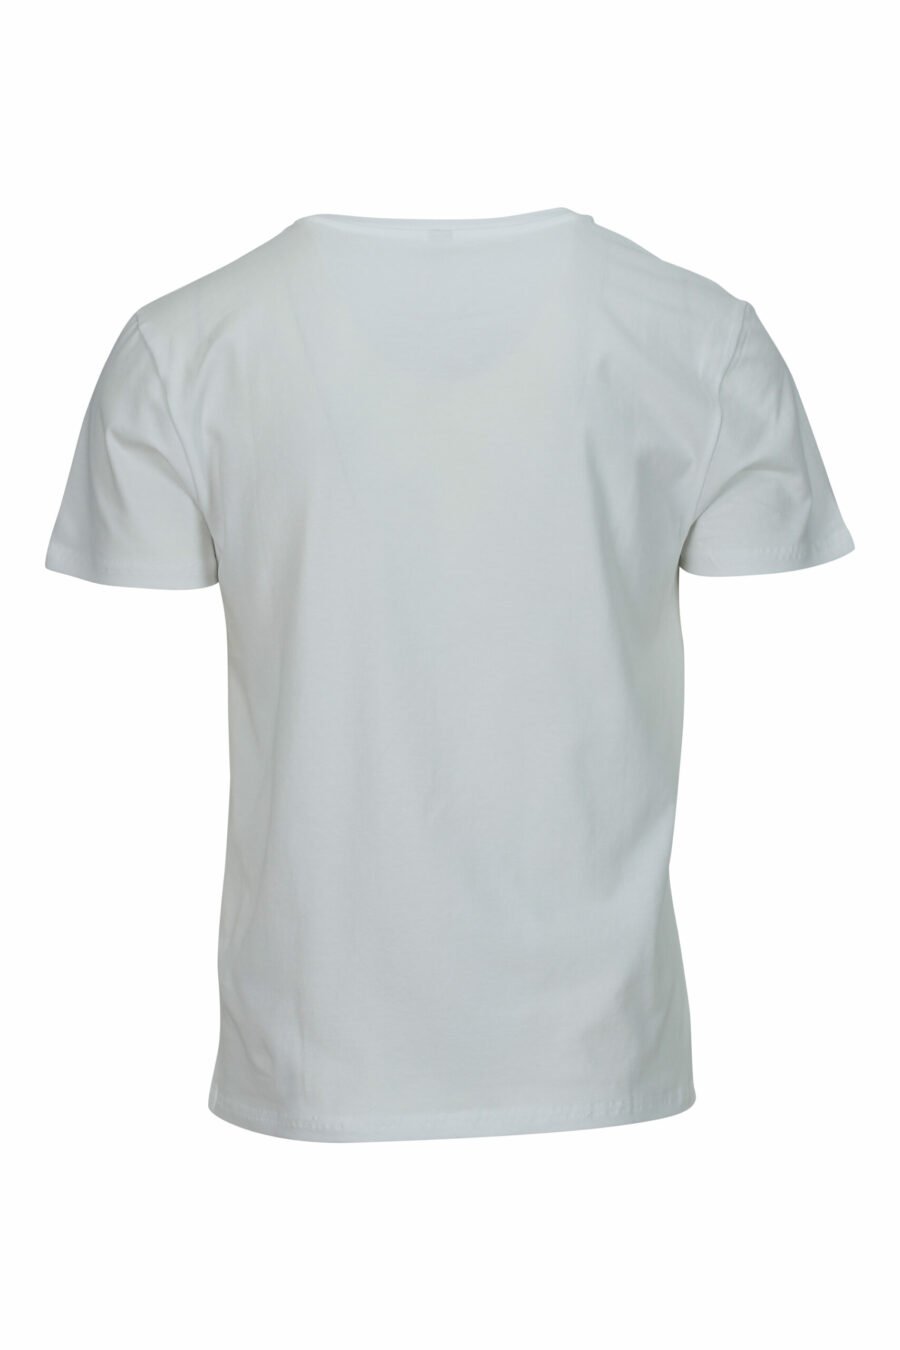 T-shirt blanc avec minilogue "swim" - 667113673356 1 à l'échelle